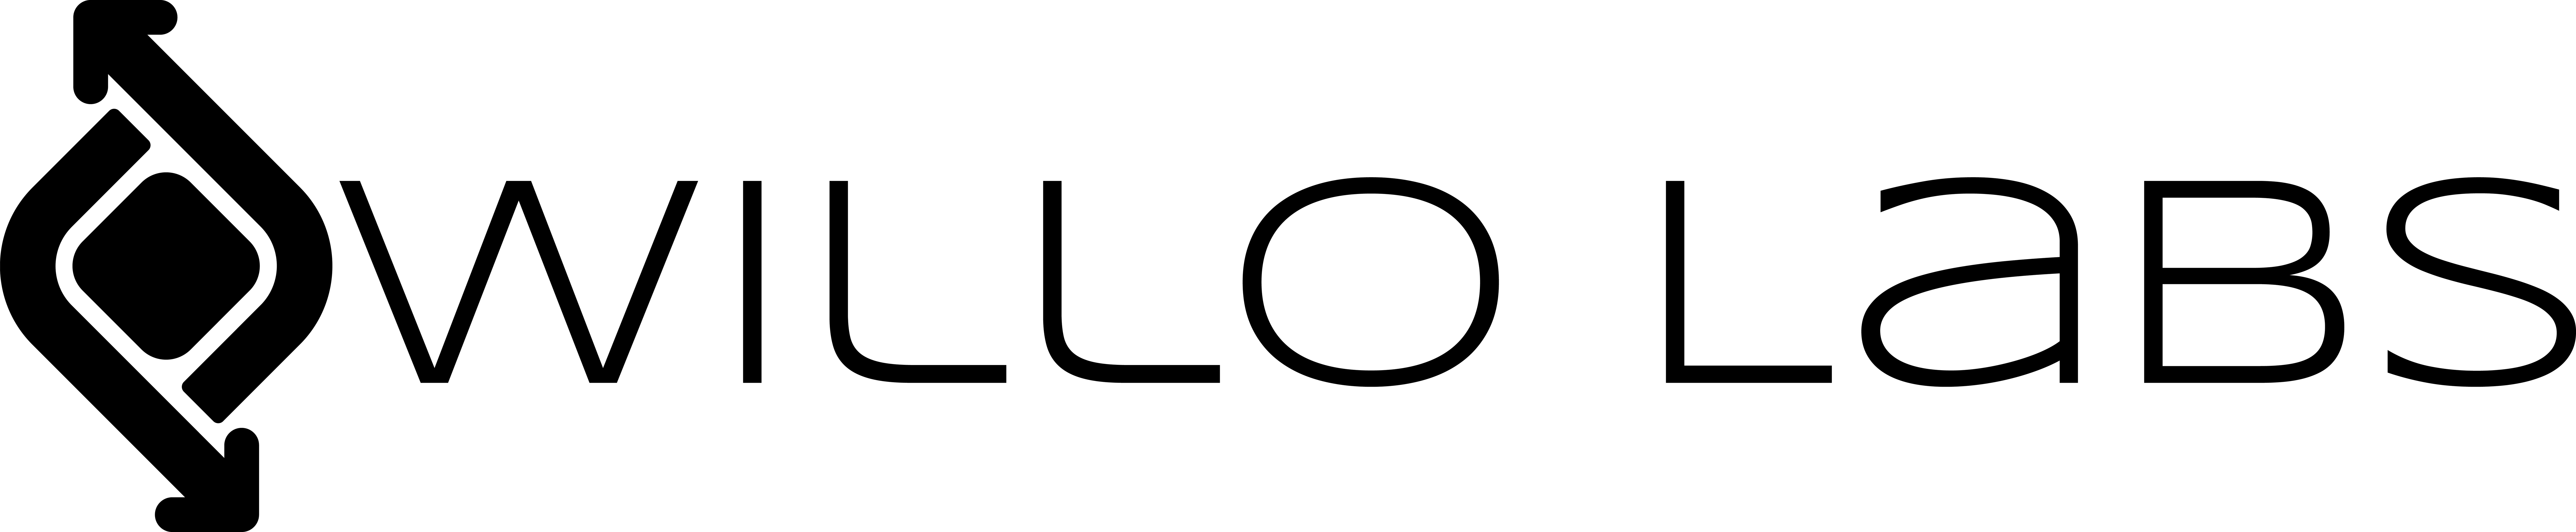 Willo Labs Logo